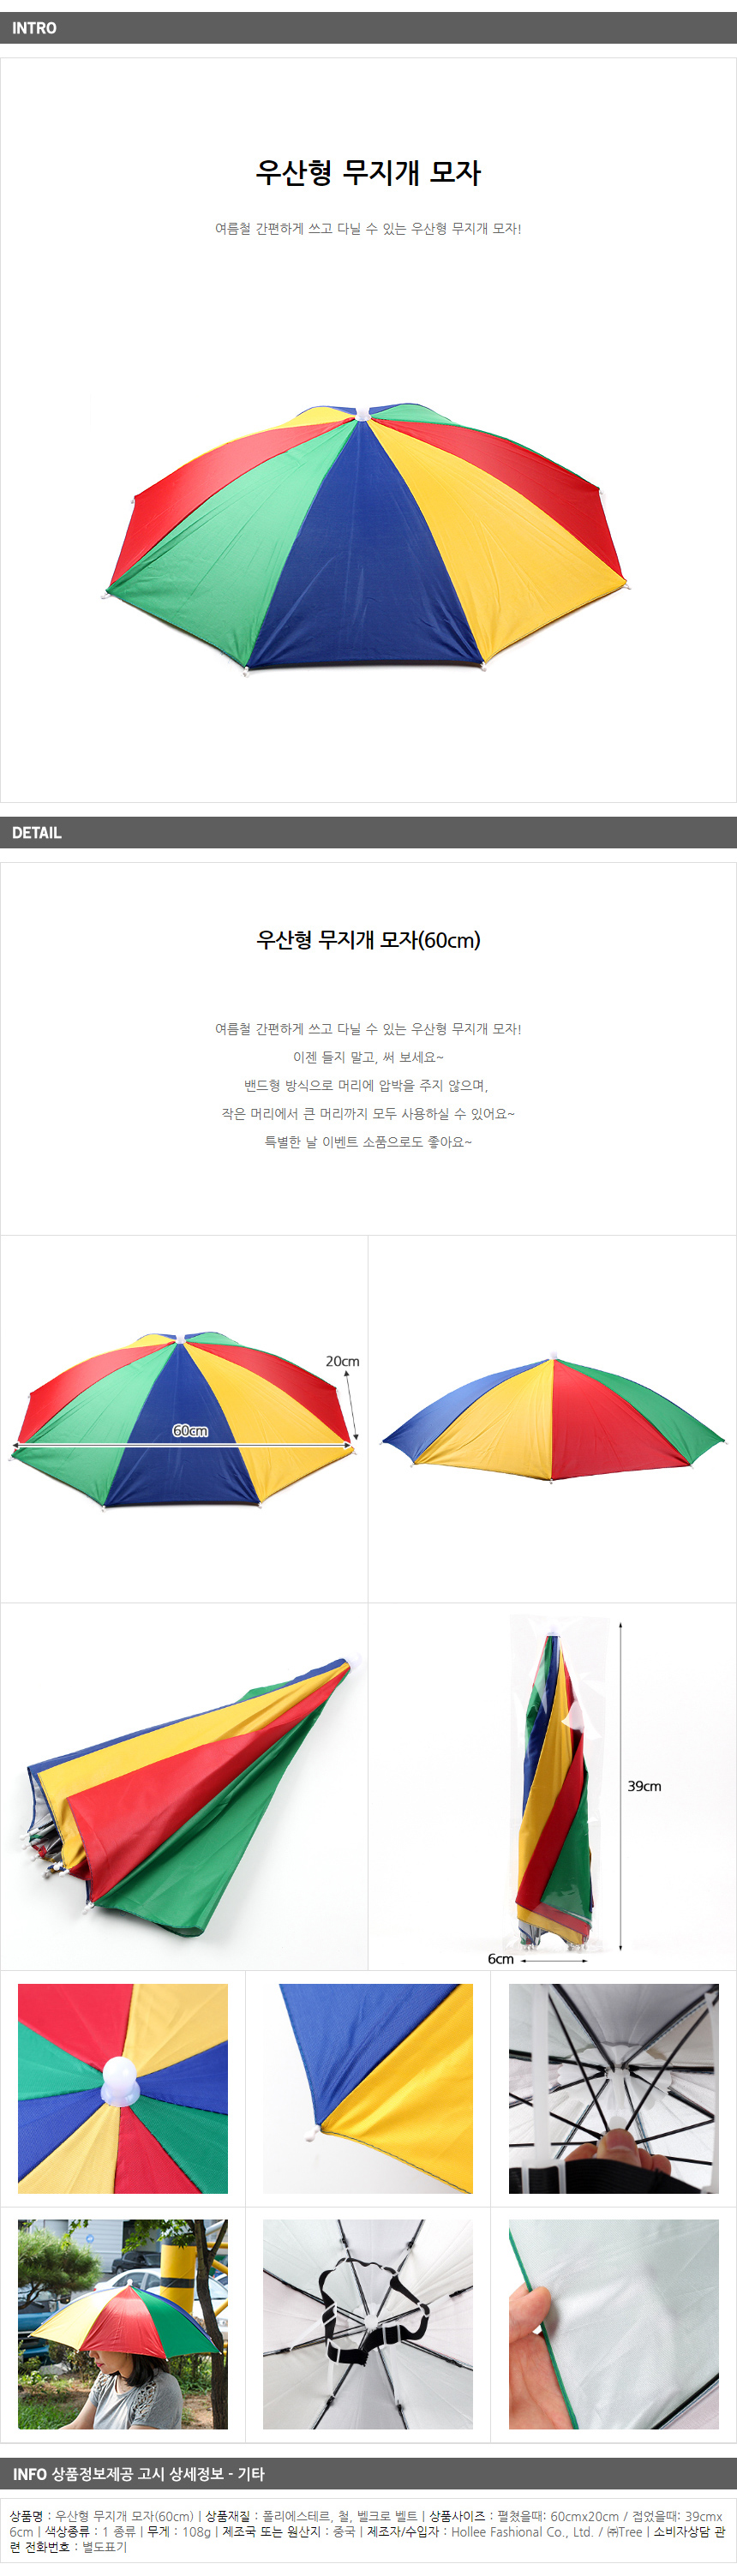 우산형무지개모자 / 이벤트 홍보사은품 밴드형양산